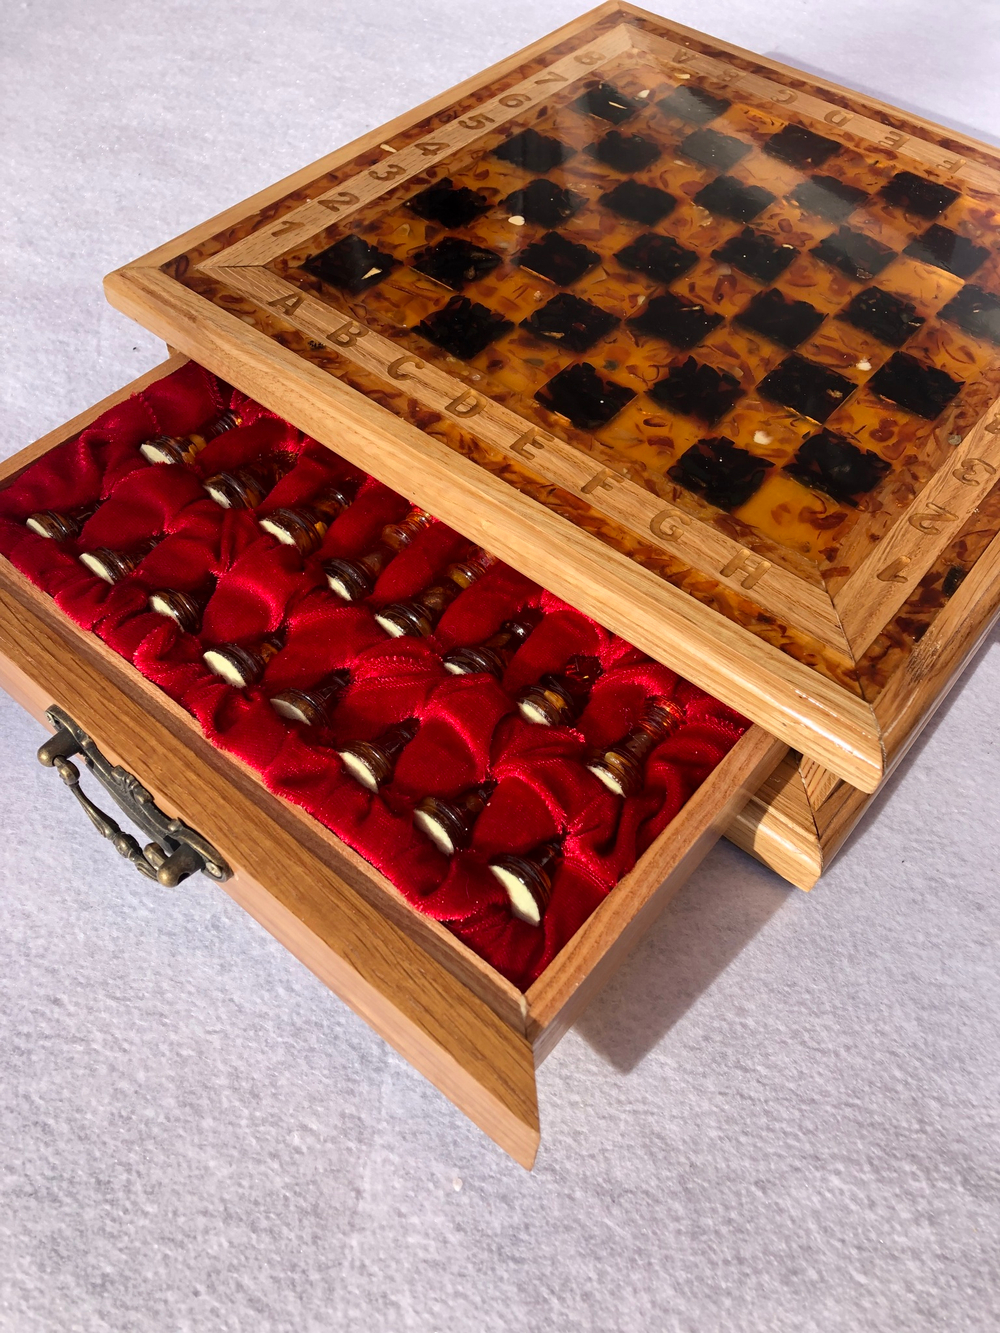 Ларец с шахматами мини 29*29*6 см (дуб)